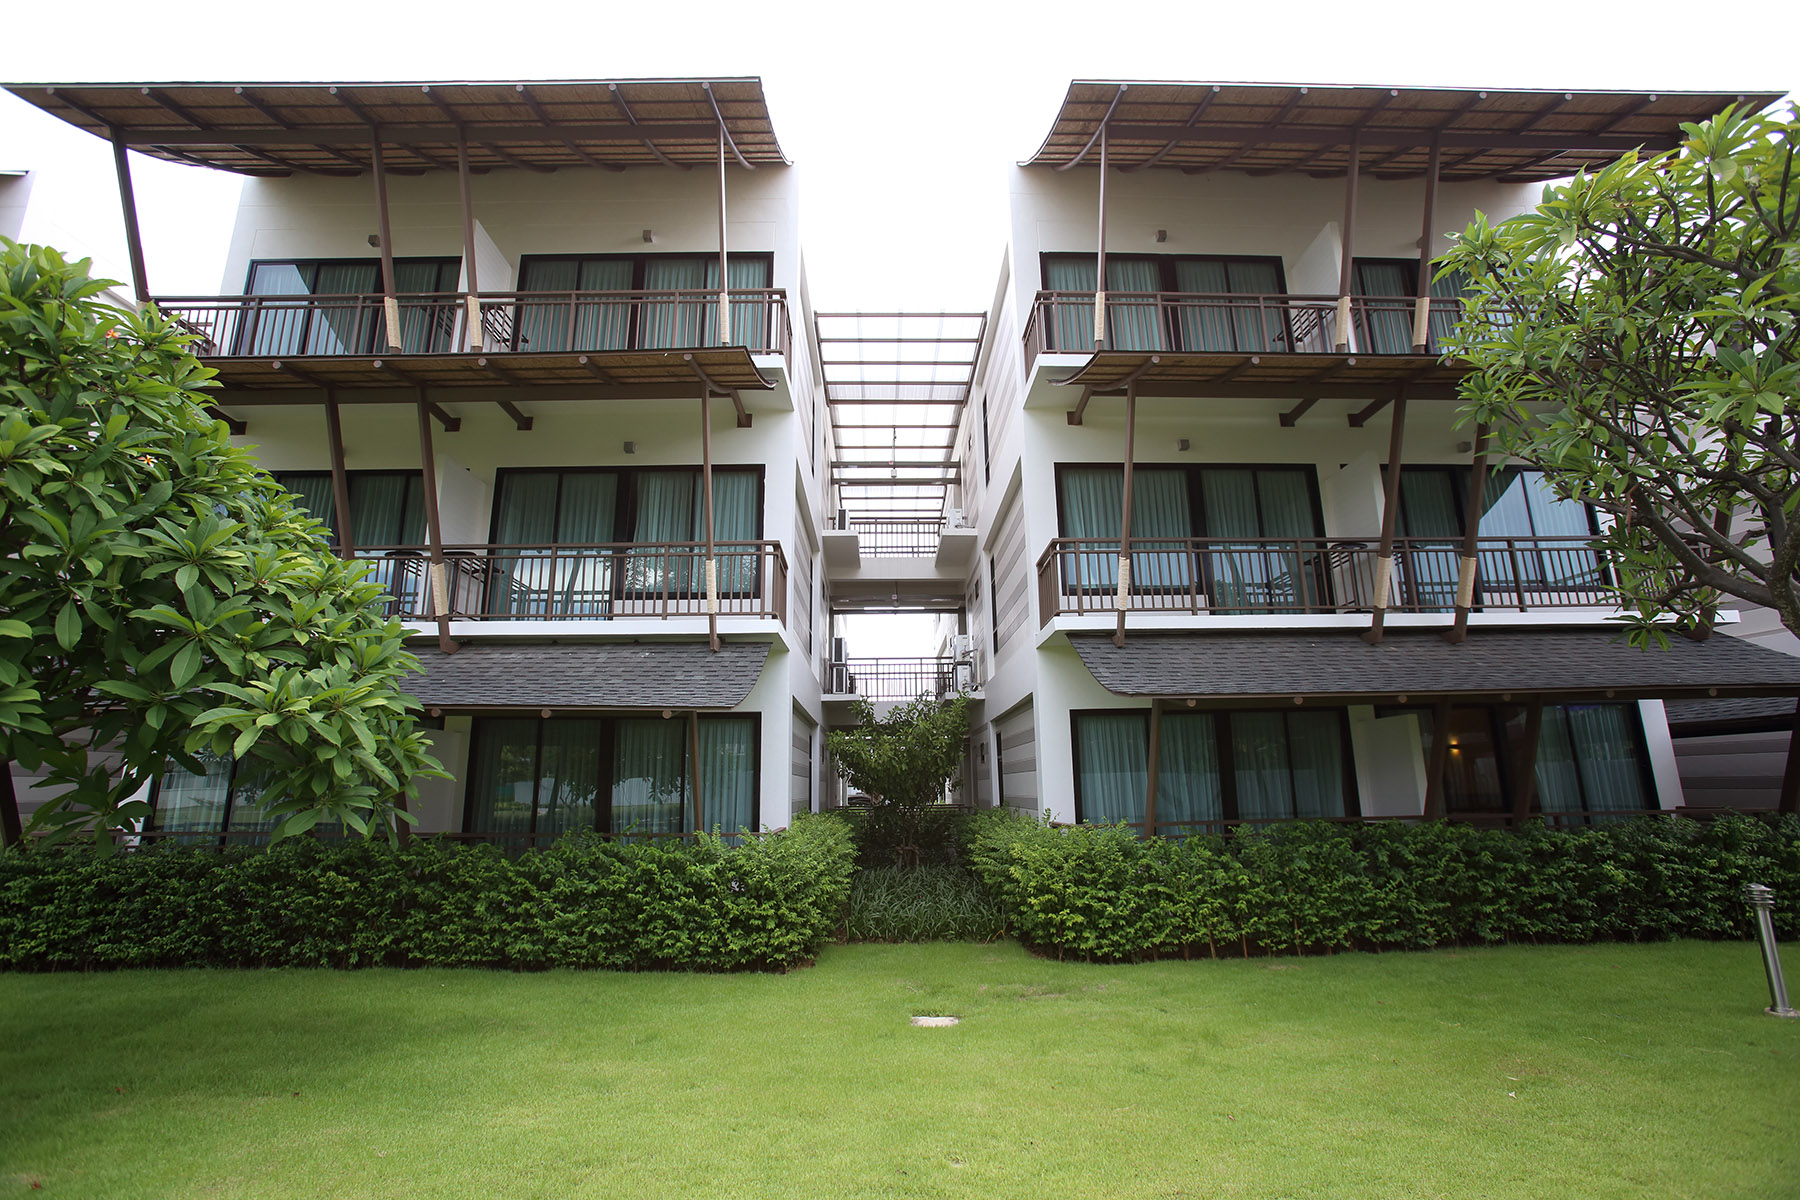 โรงแรมบางแสน เฮอริเทจ : Bangsaen Heritage Hotel